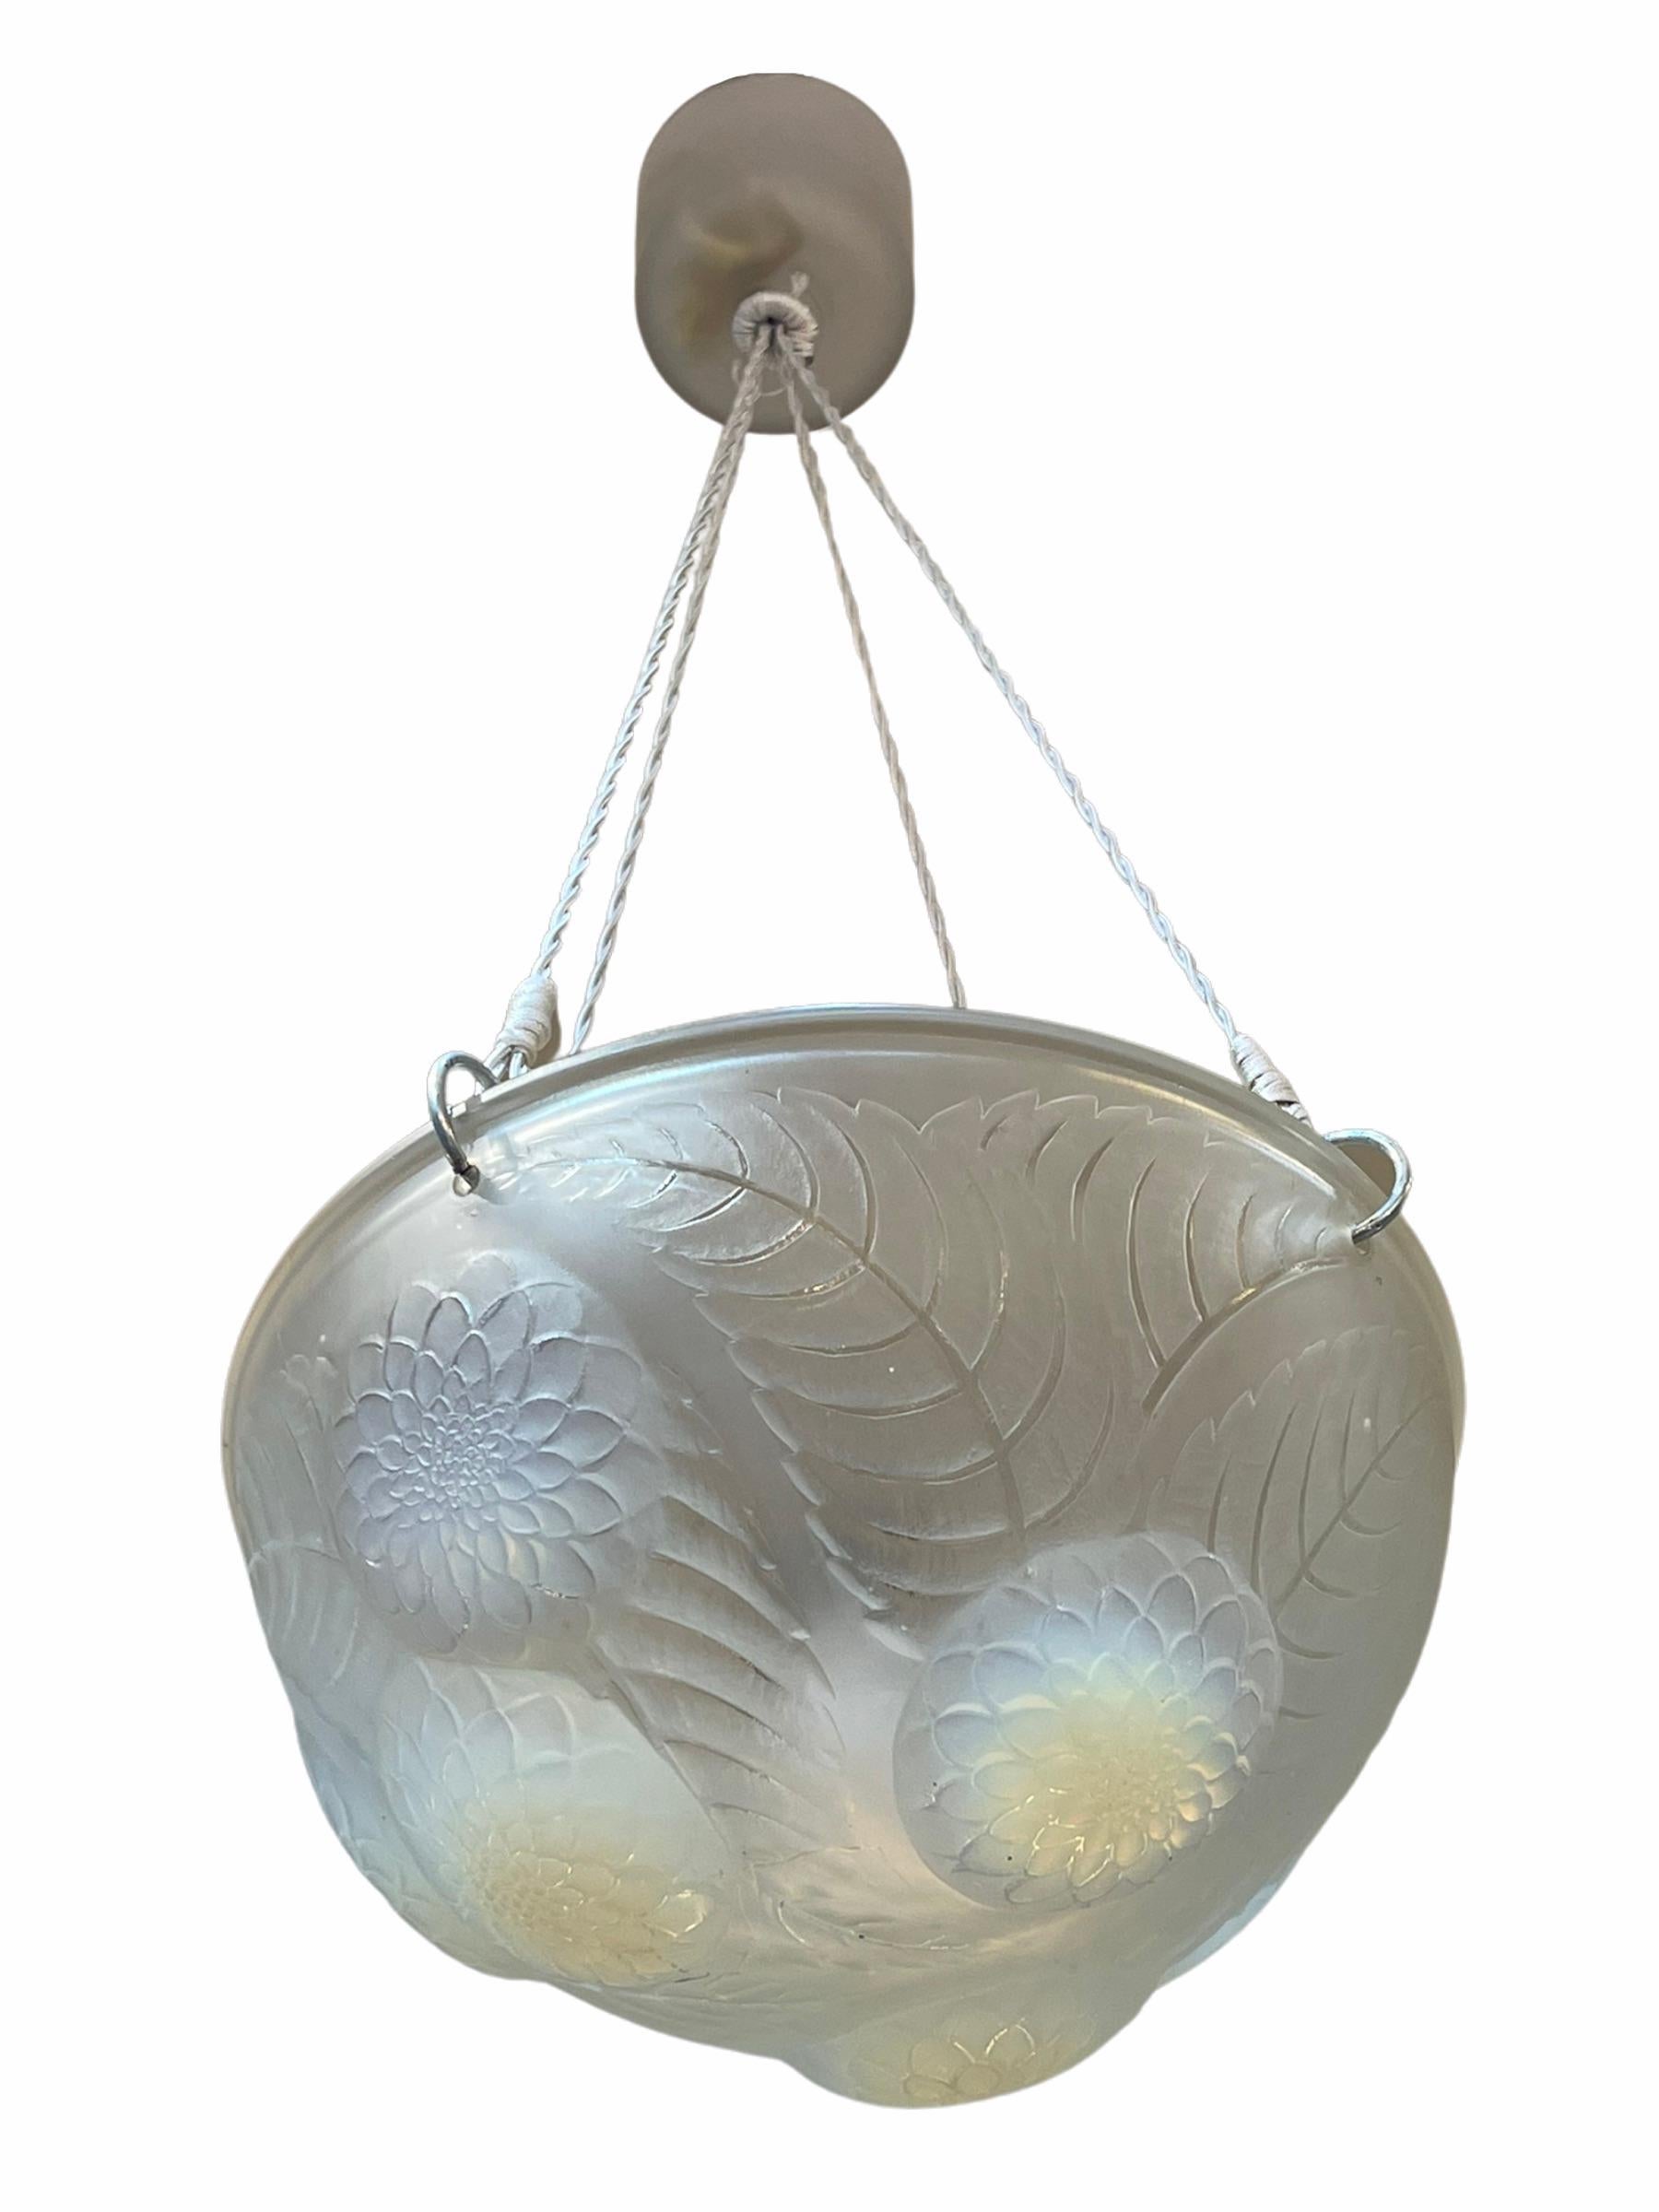 Molded 1921 René Lalique Dahlias Complet Ceiling Light Chandelier Opalescent Glass